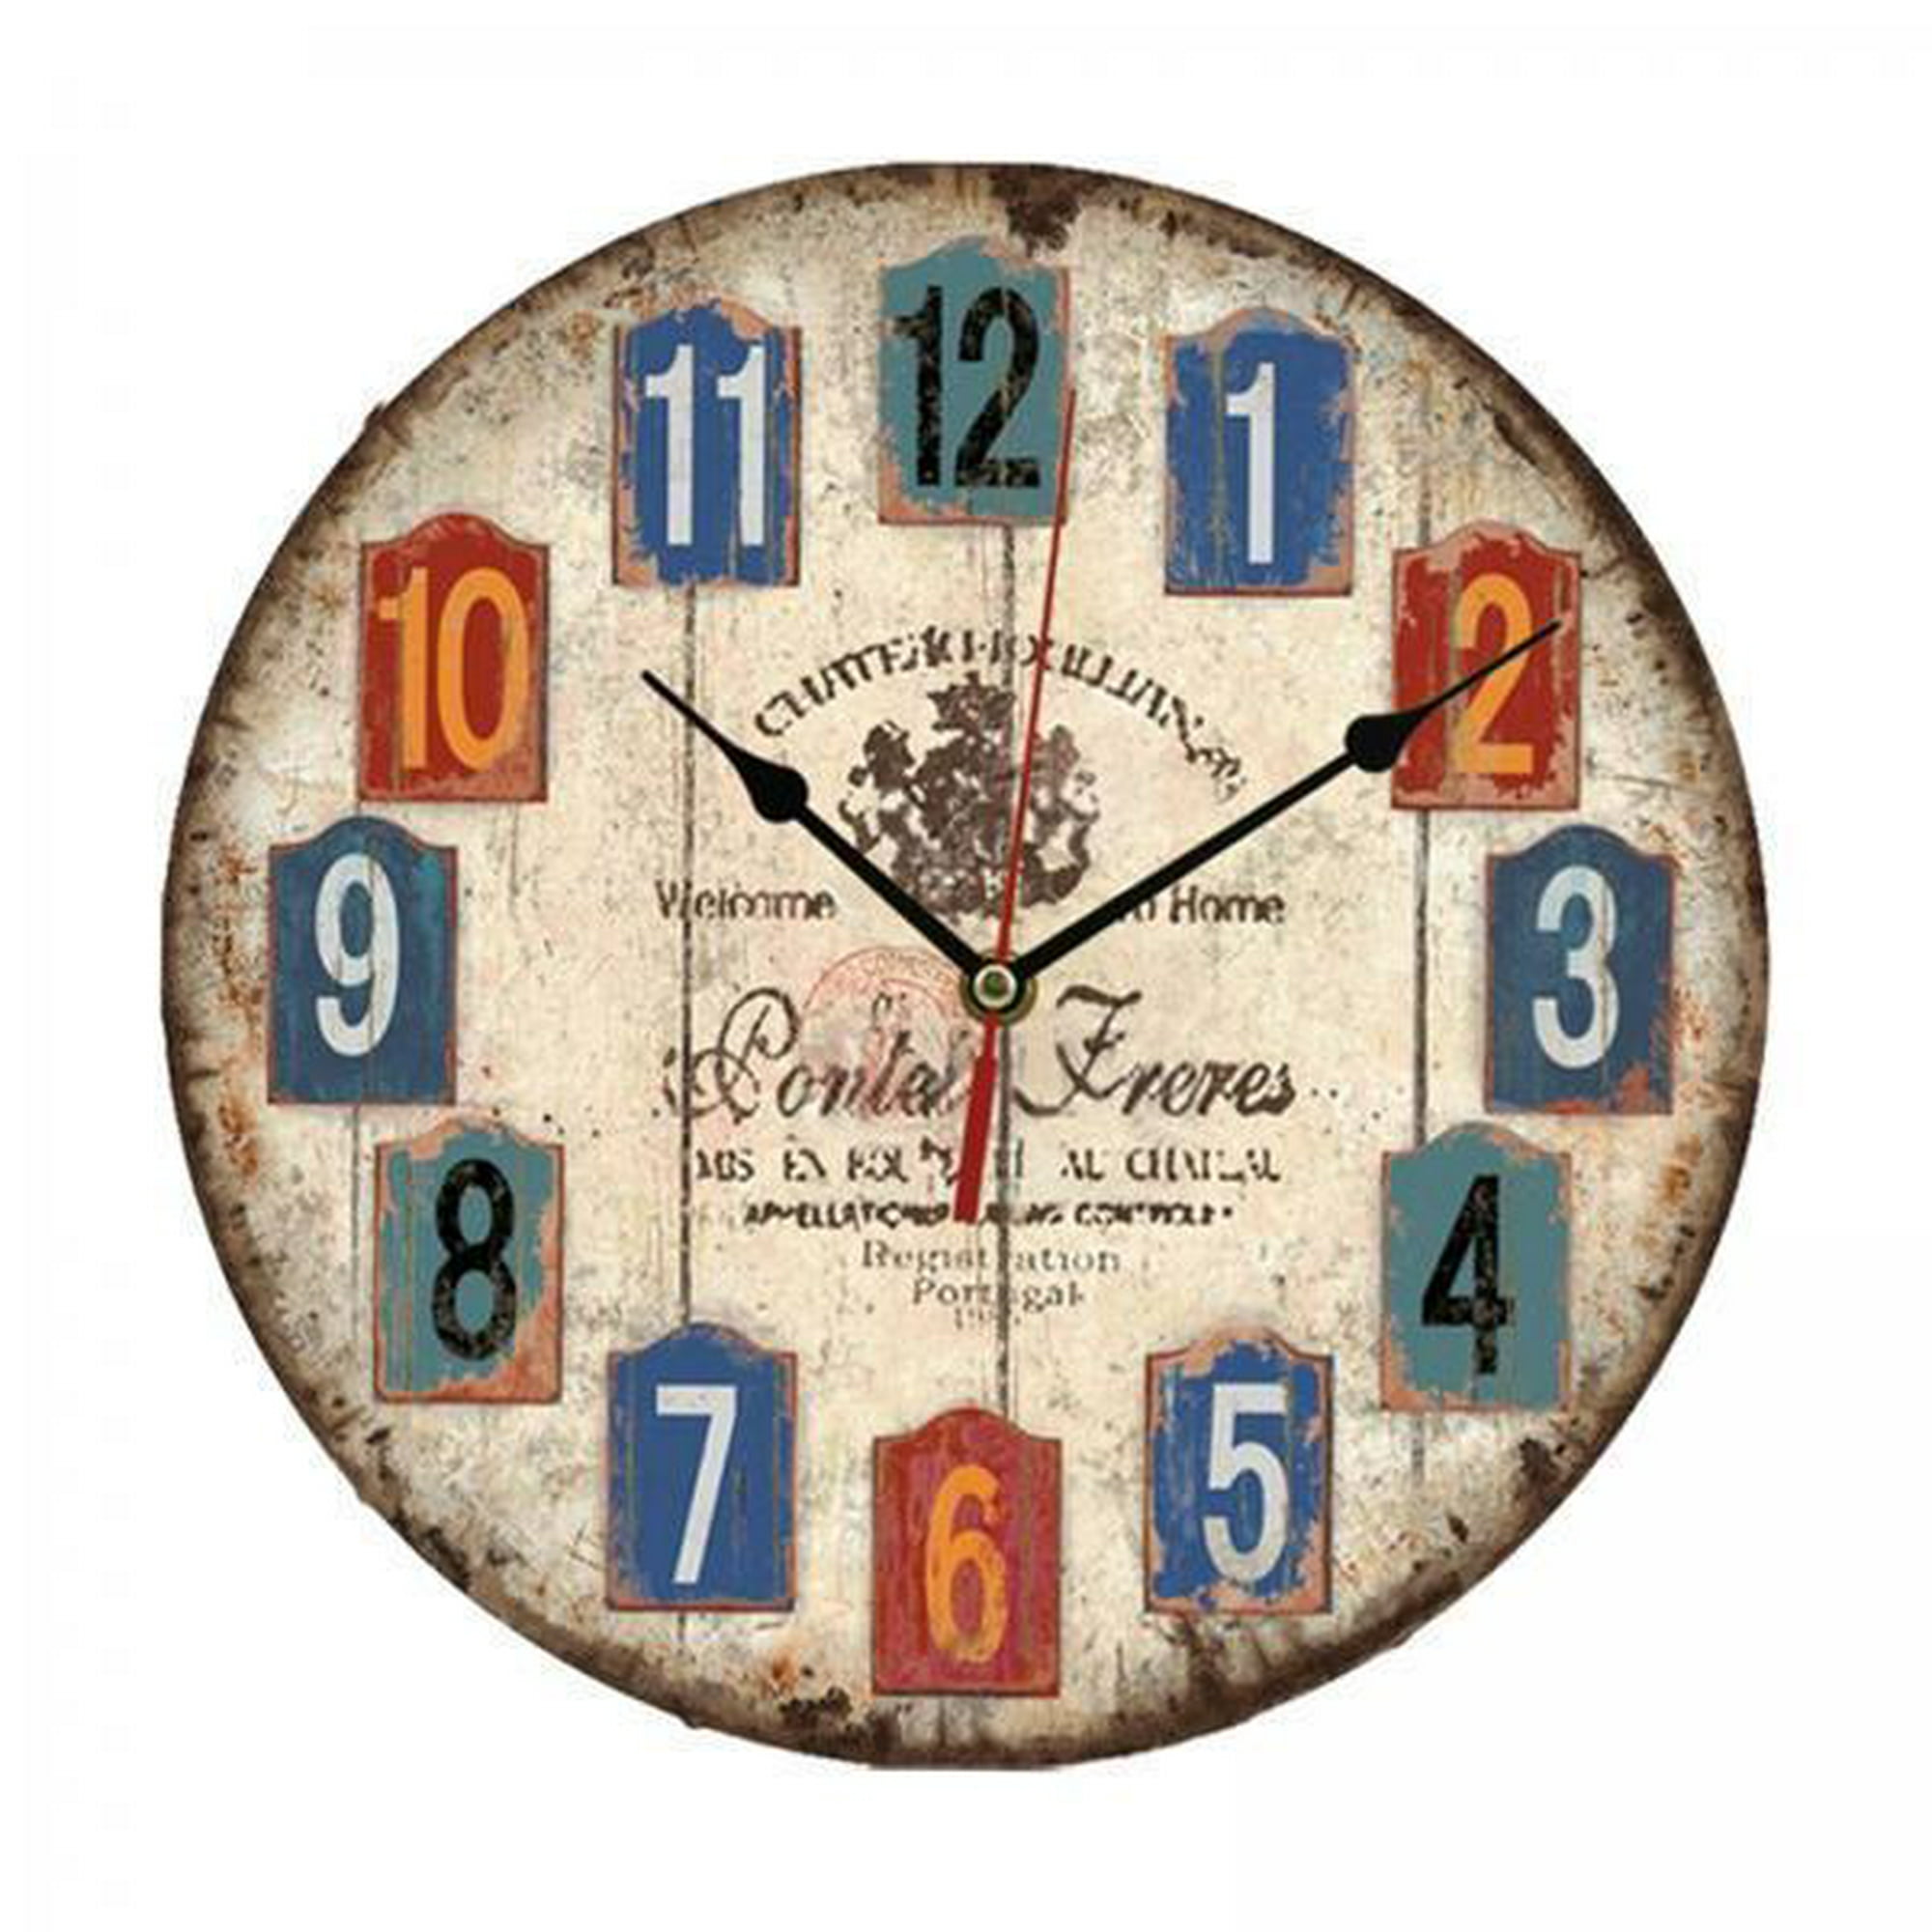 Reloj HabitacióN Digital Reloj Dormitorio Tictac Ver Oscuridad Reloj  DecoracióN Pared Grandes Relojes Cocina Oficina Casa DecoracióN Arte  Creativo C perfecl reloj de habitación